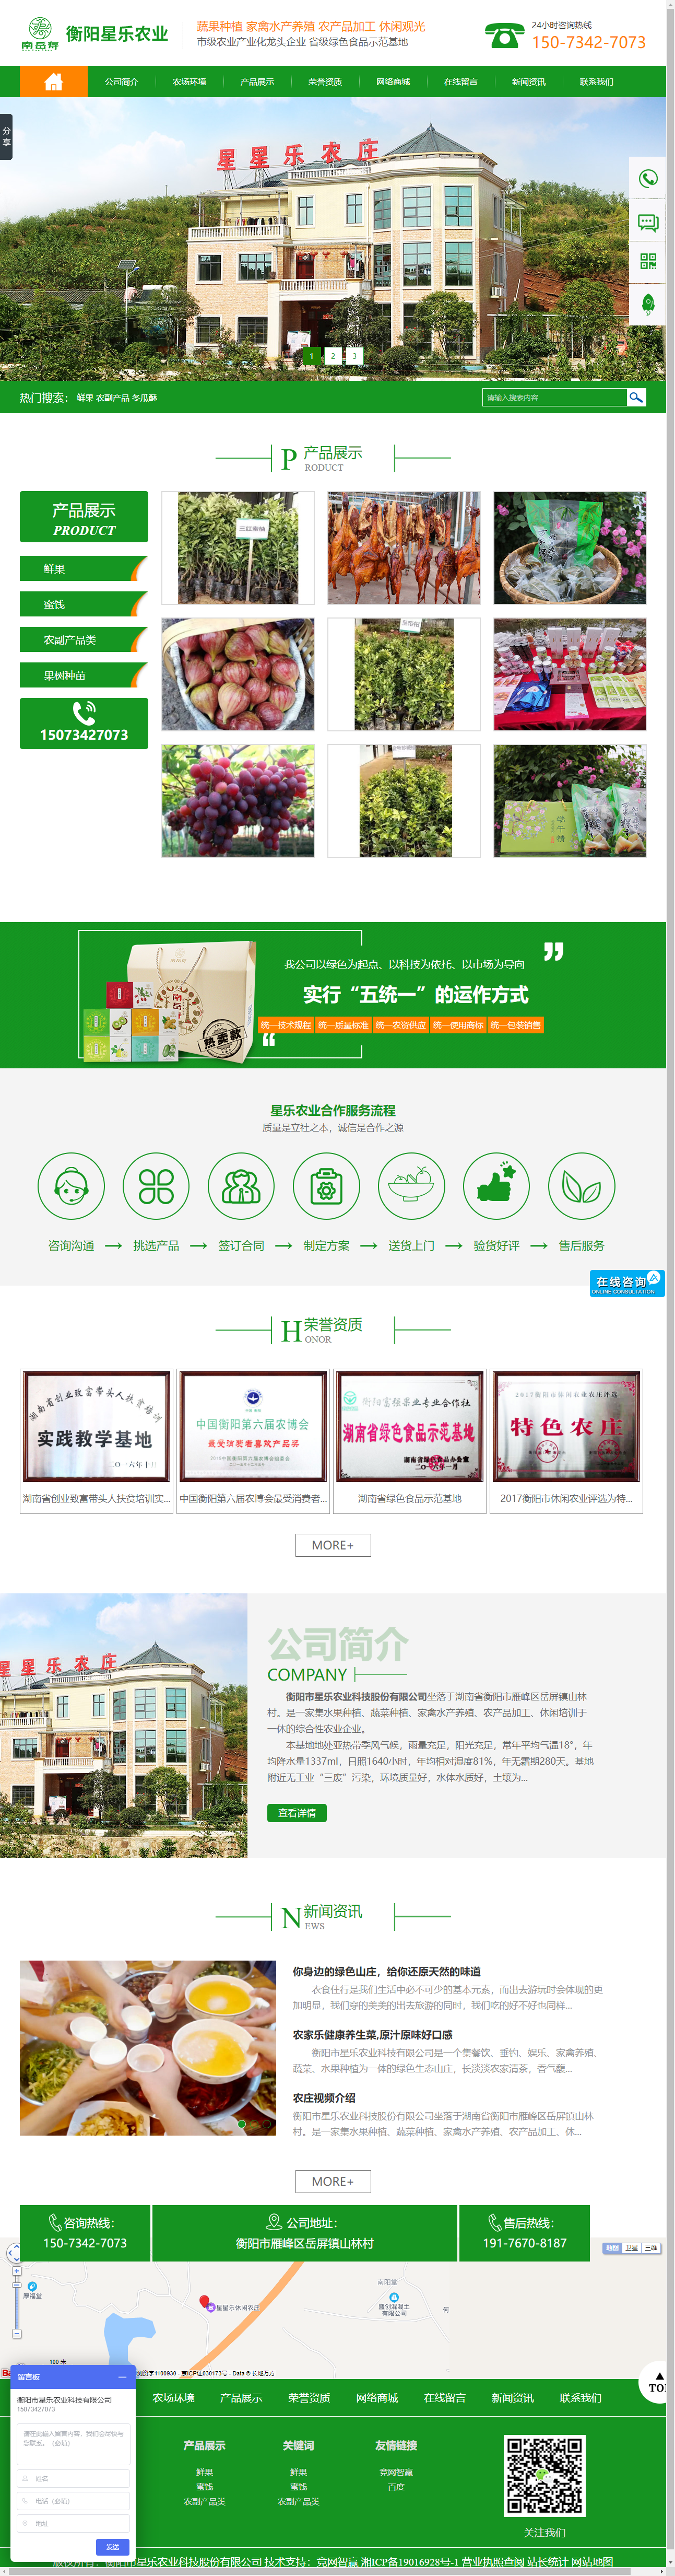 衡阳市星乐农业科技股份有限公司网站案例